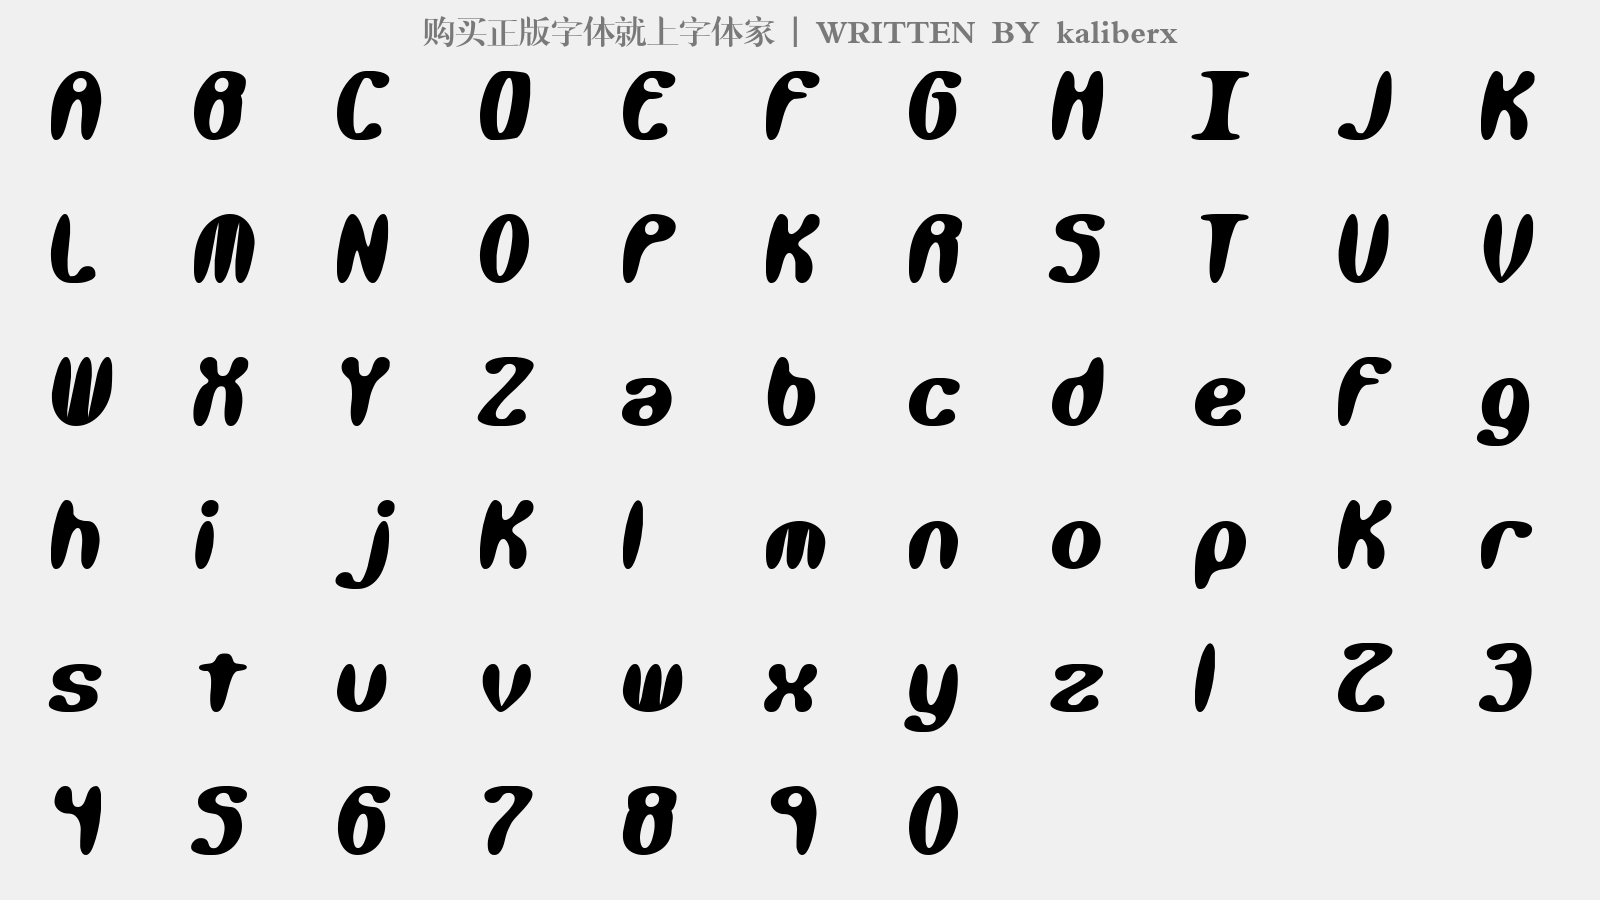 kaliberx - 大写字母/小写字母/数字